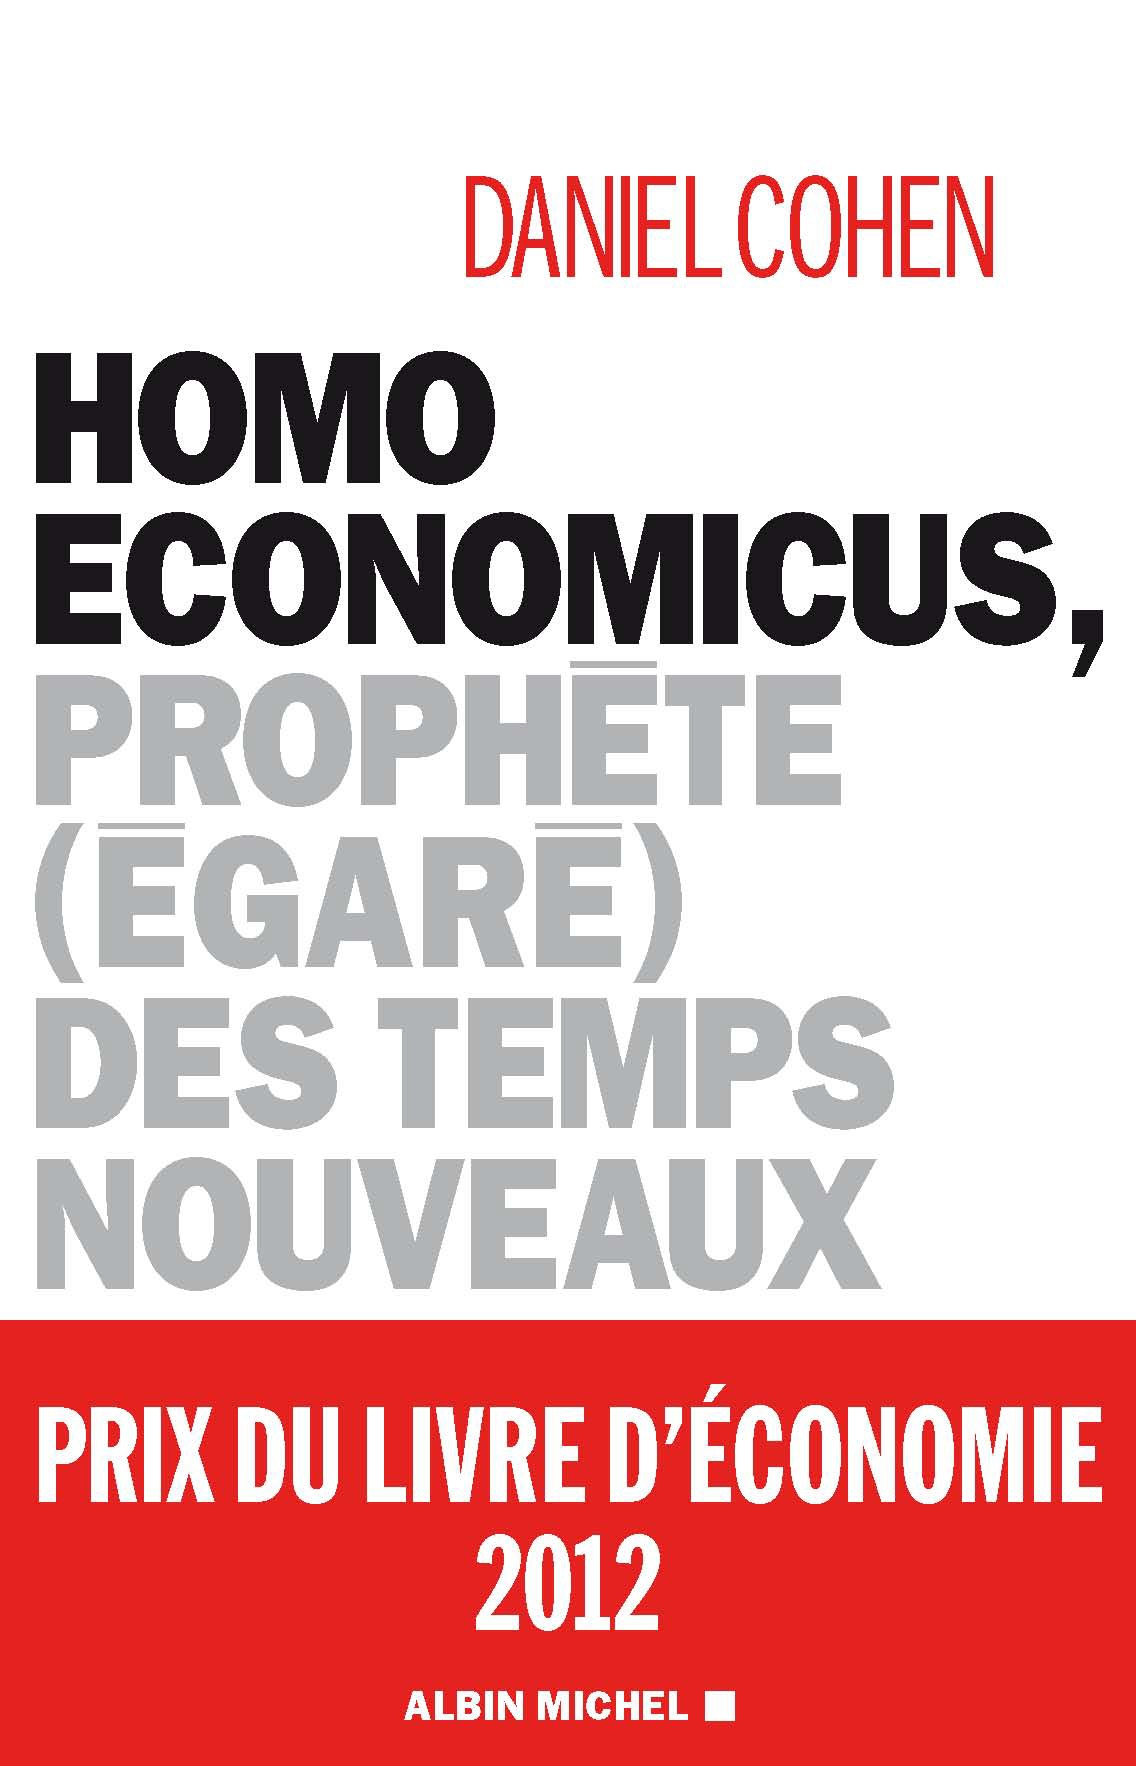 Couverture du livre Homo economicus